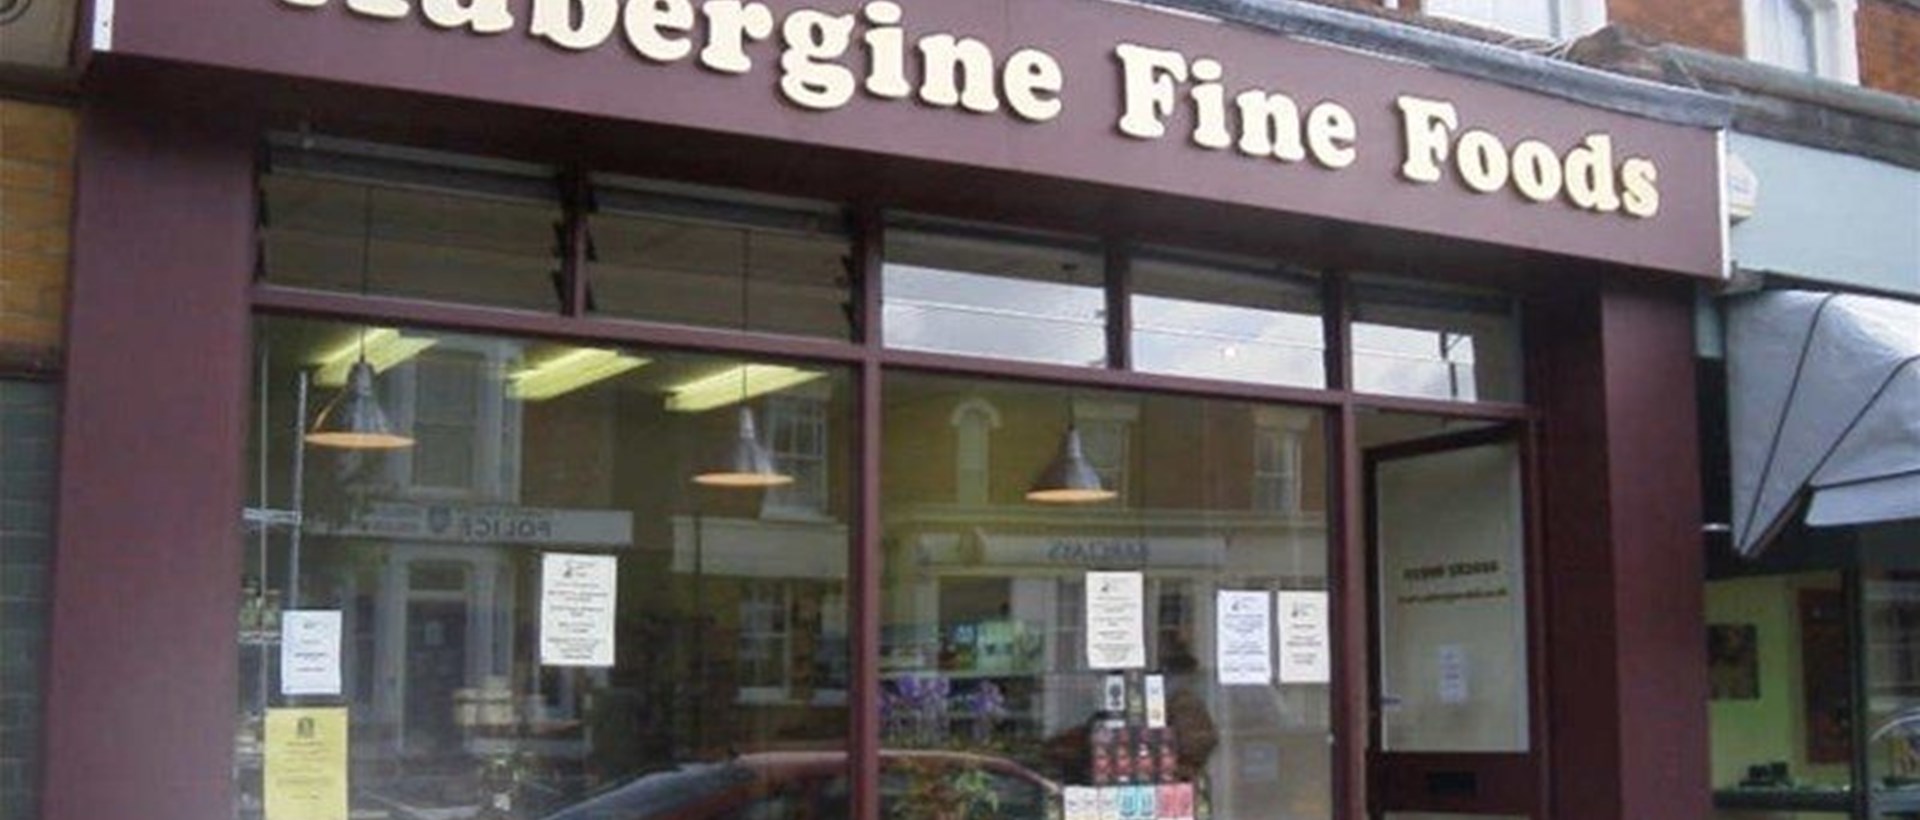 Flat Cut Aluminium Letters On Locators For Aubergine Fine Foods Milton Keynes